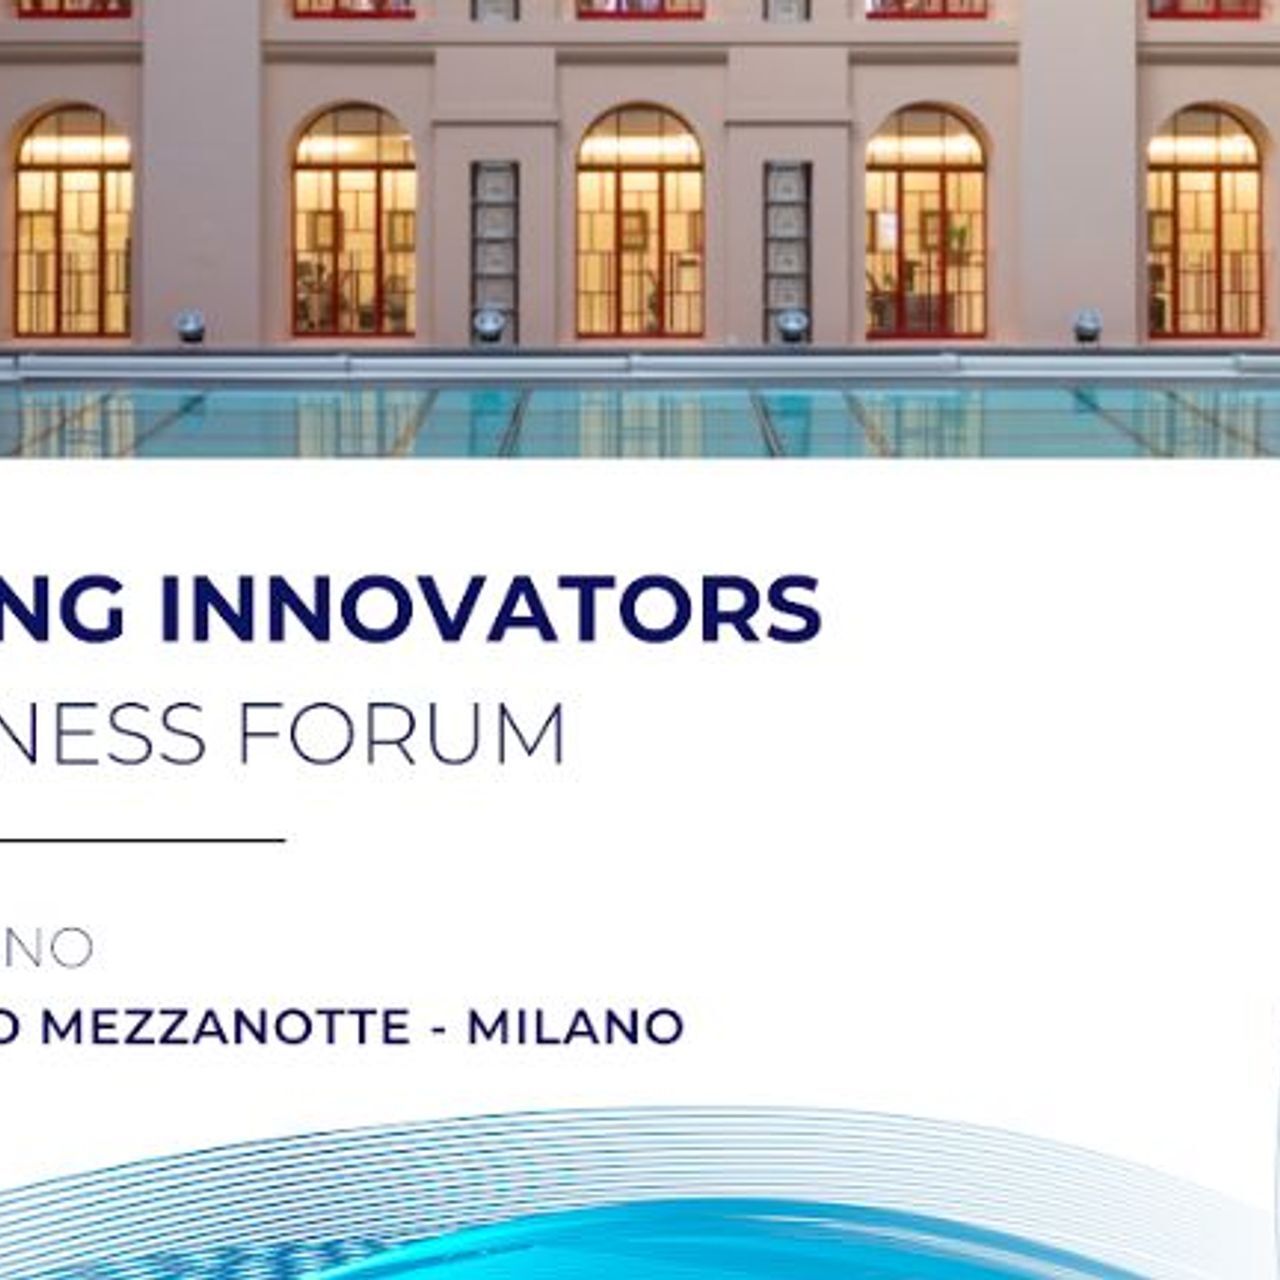 La locandina dello “Young Innovators Business Forum” del 27 giugno 2022 a Milano